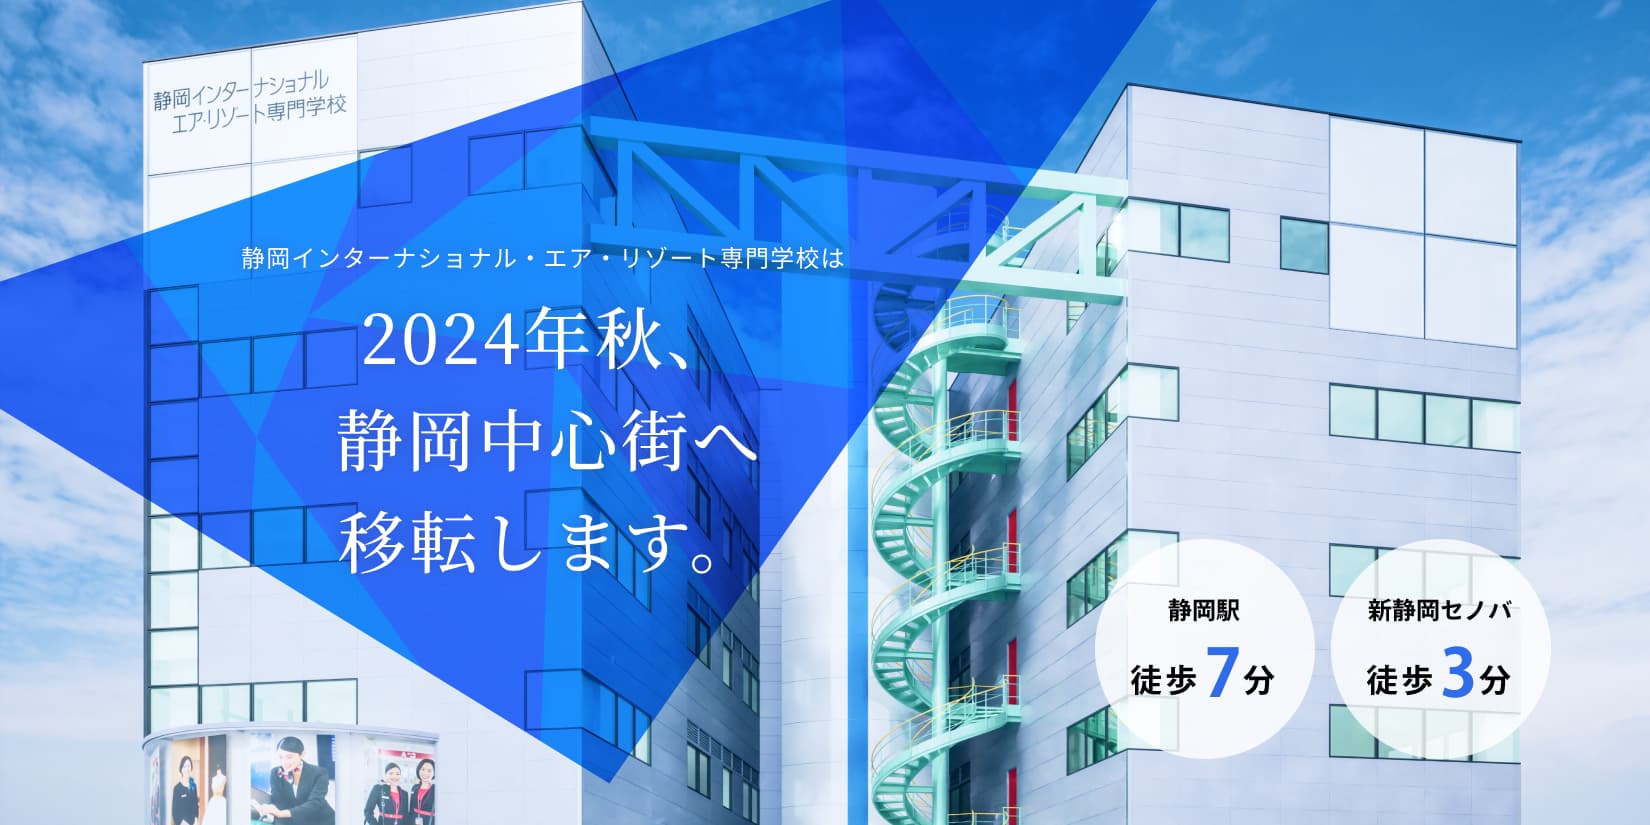 静岡インターナショナルエアリゾート専門学校は、2024年秋、静岡中心街へ移転します。